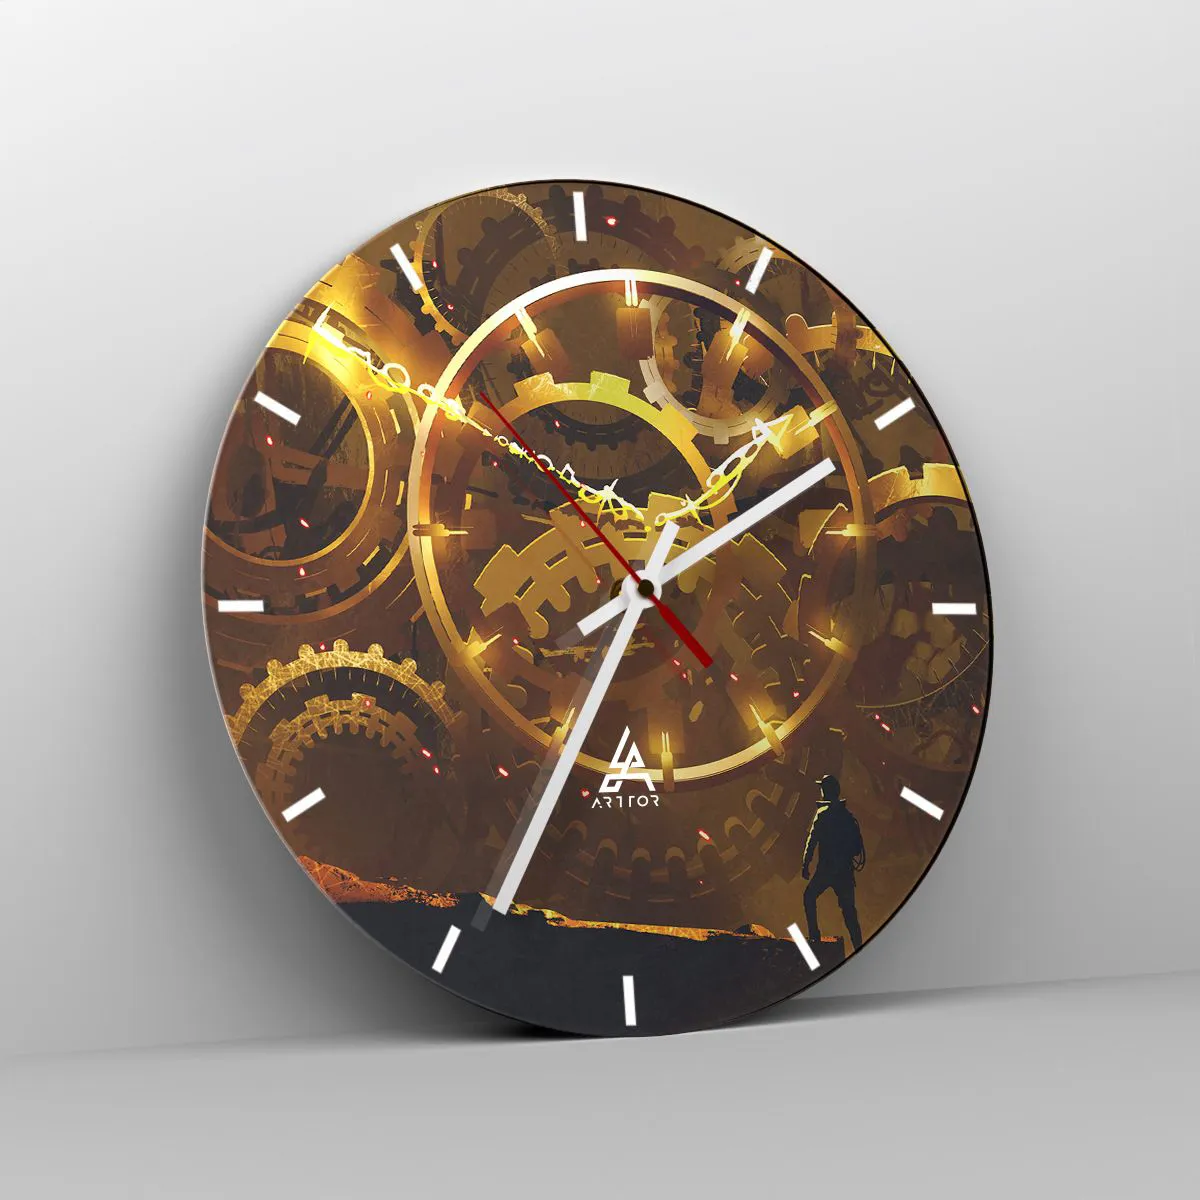 Orologio da parete Arttor - Alla fonte del tempo - Quadrante con trattini,  Forma: Cerchio - 30x30 cm - Astrazione, Arte, Grafica